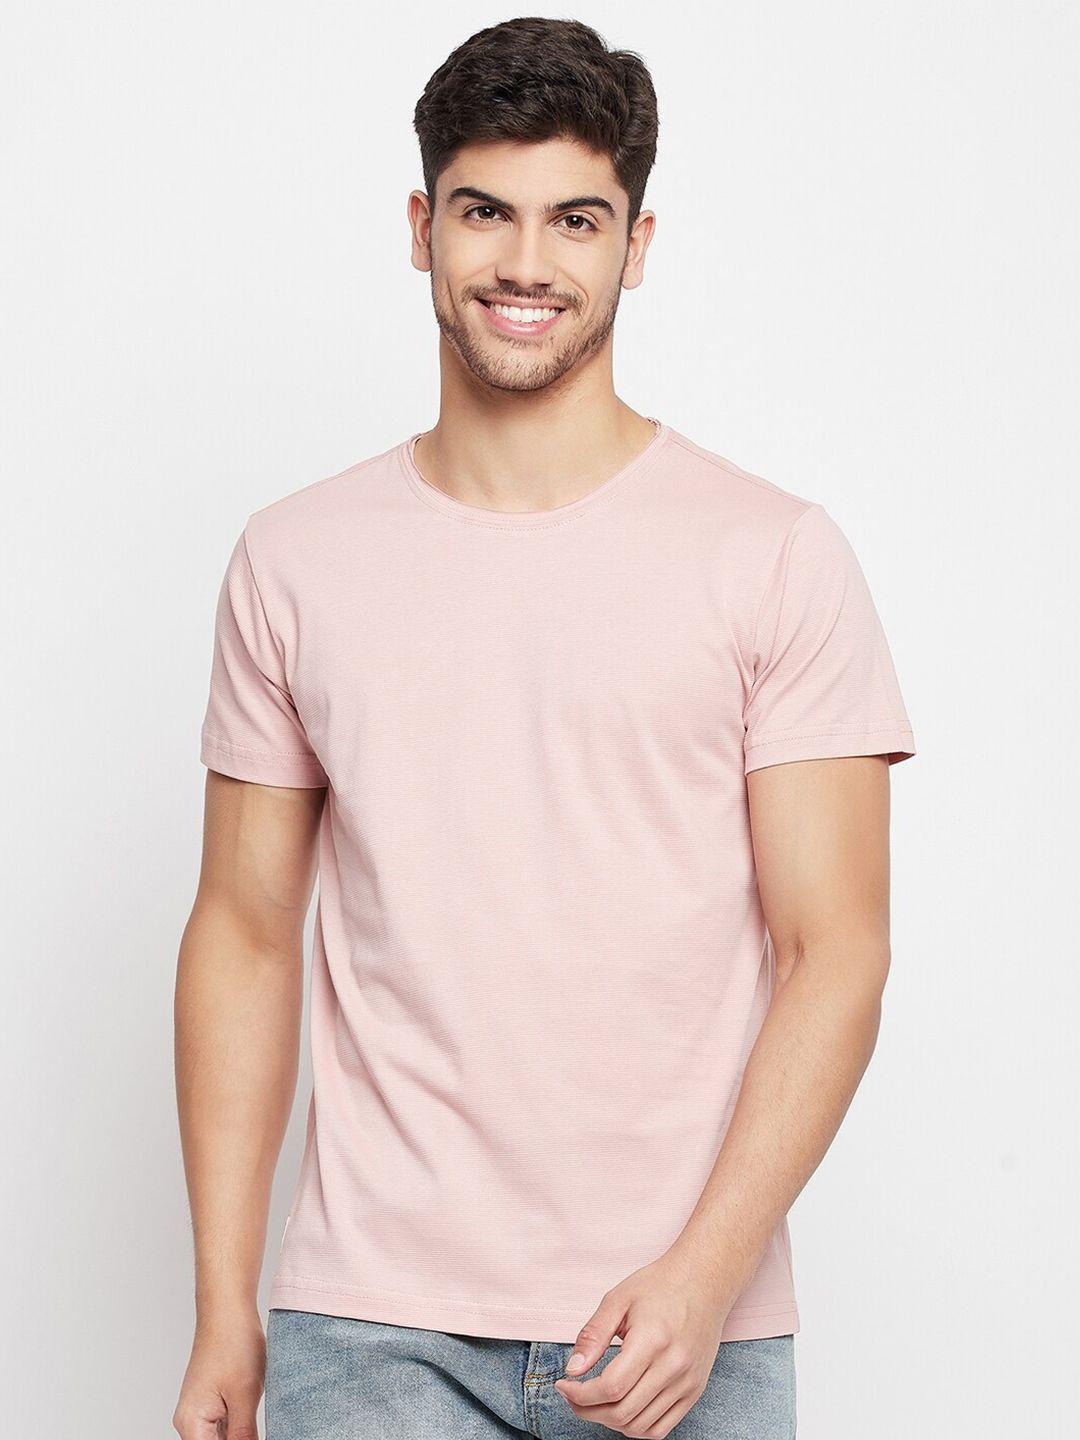 qubic-round-neck-cotton-t-shirt